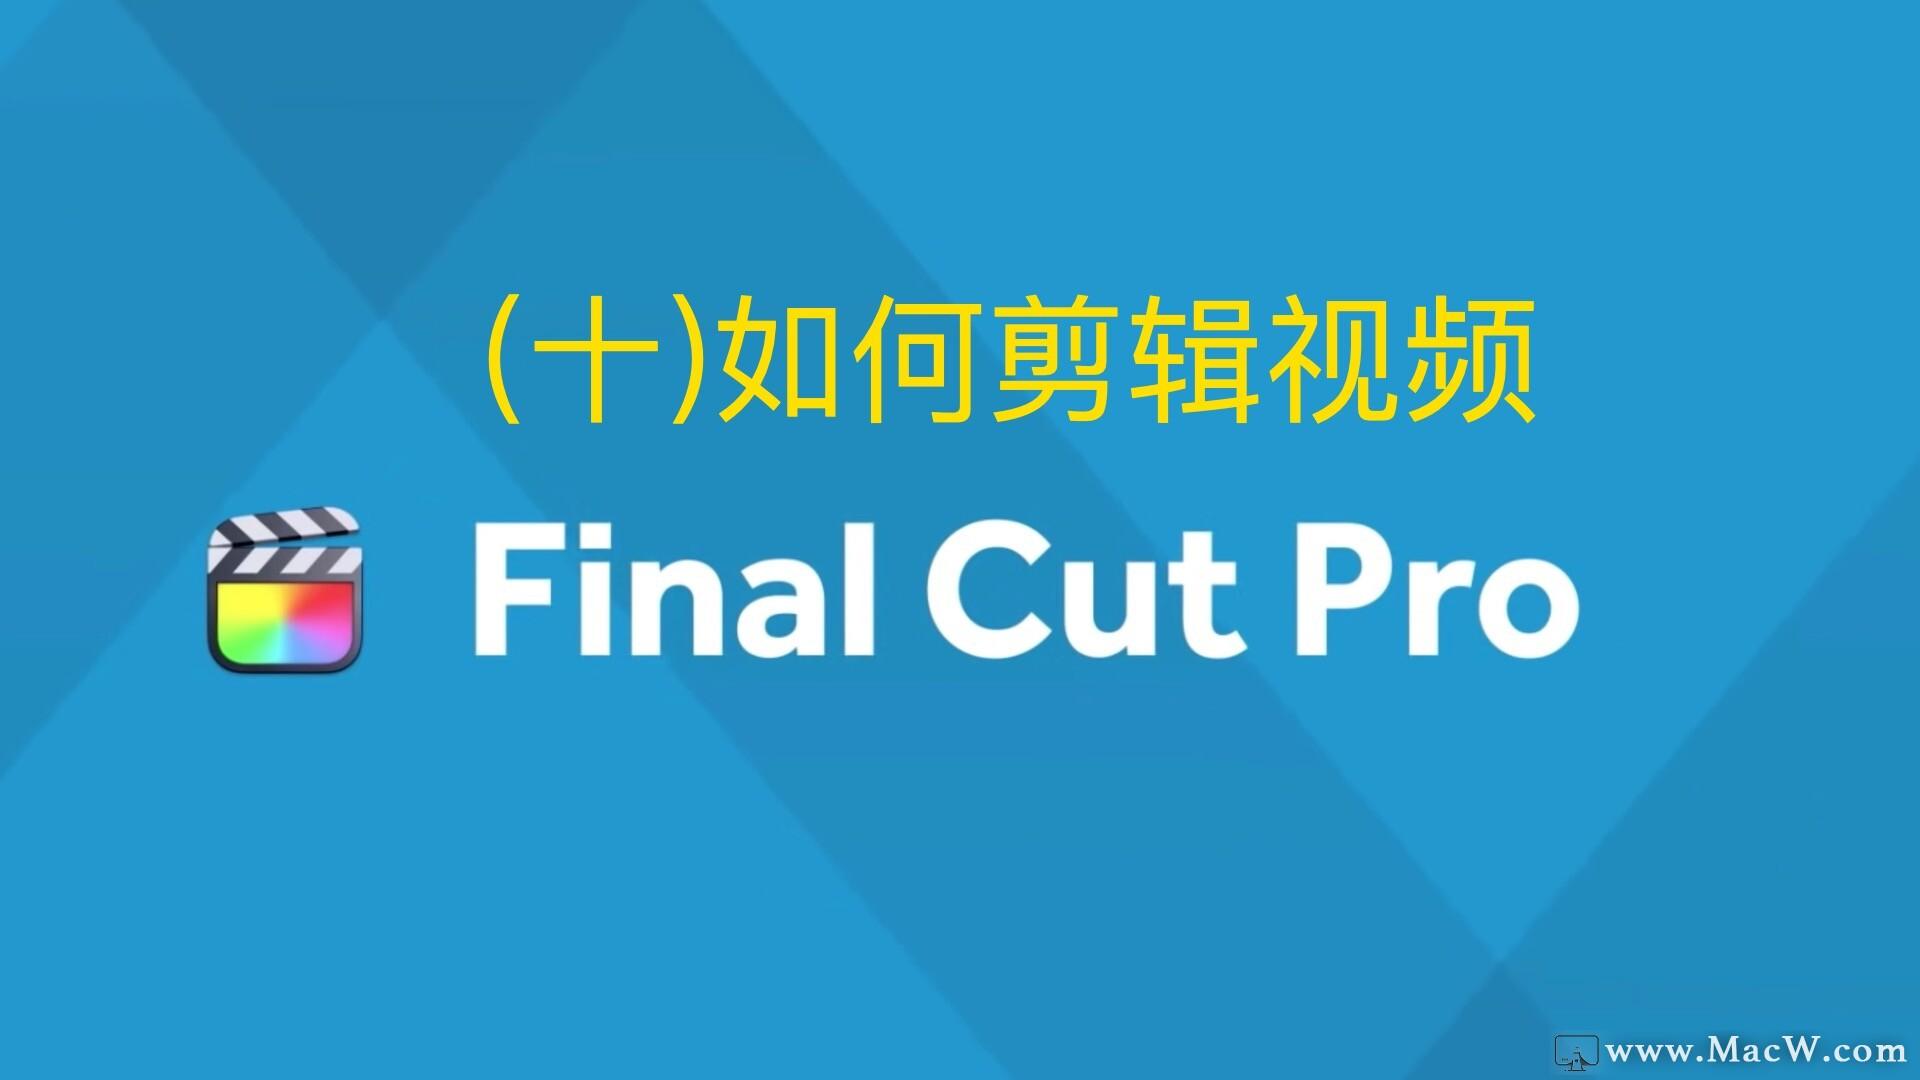 Final  Cut  Pro中文新手教程 (十)如何剪辑视频